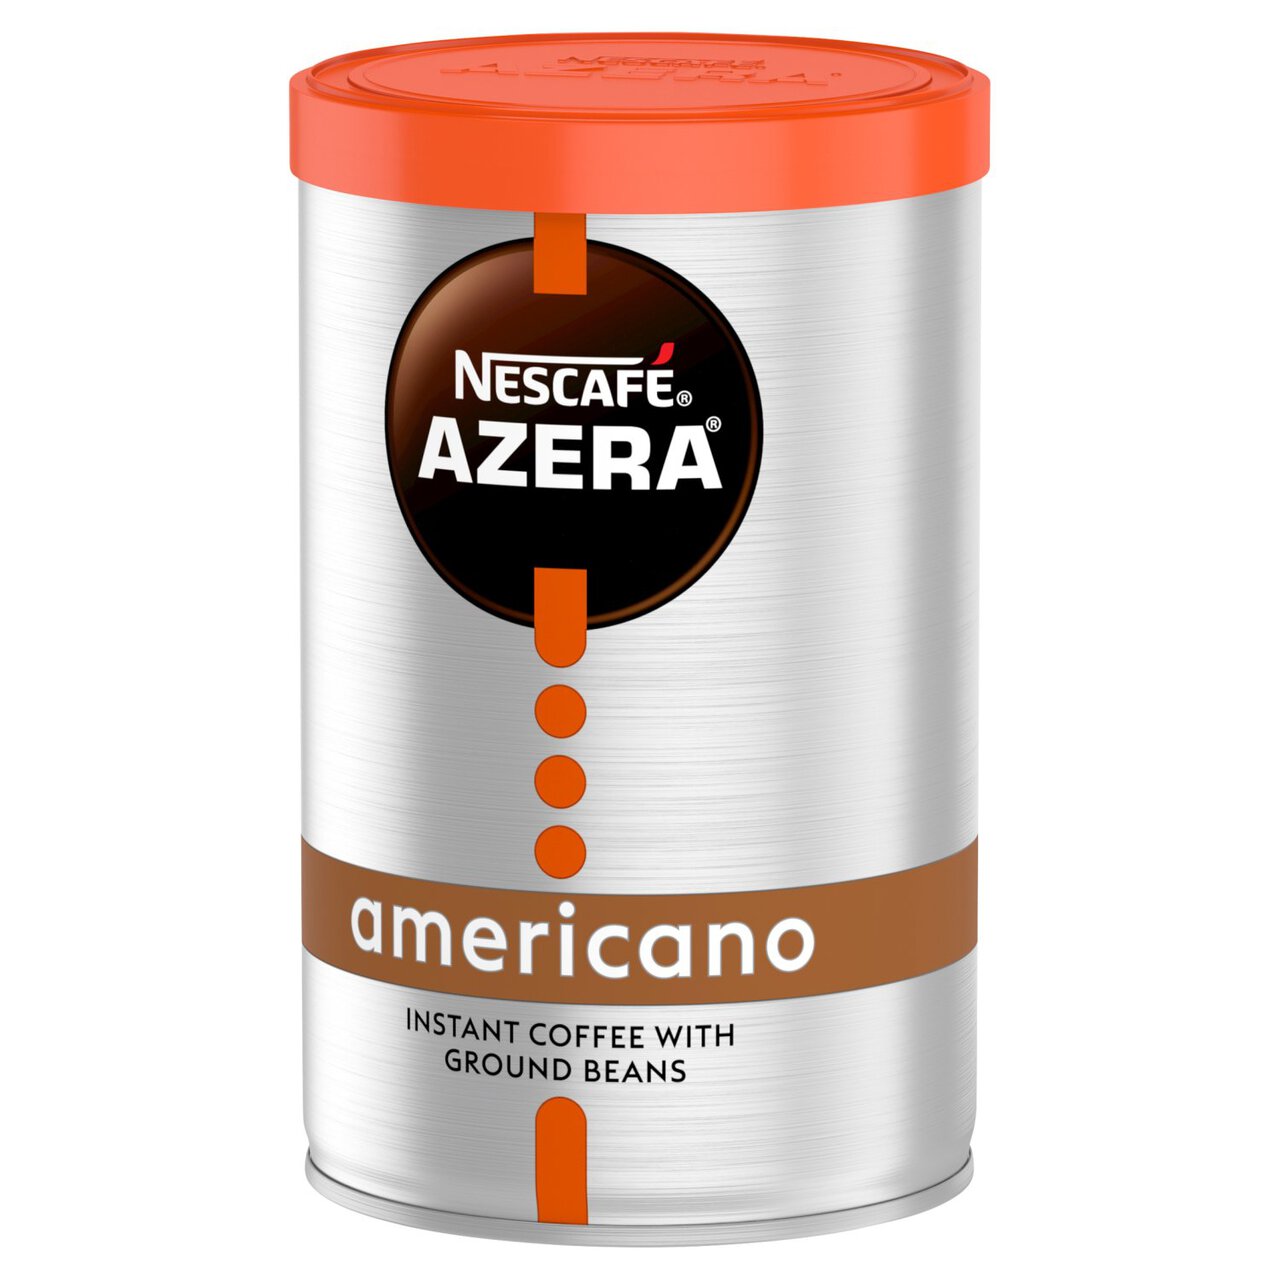 Nescafe Azera Americano Instant Coffee 90g